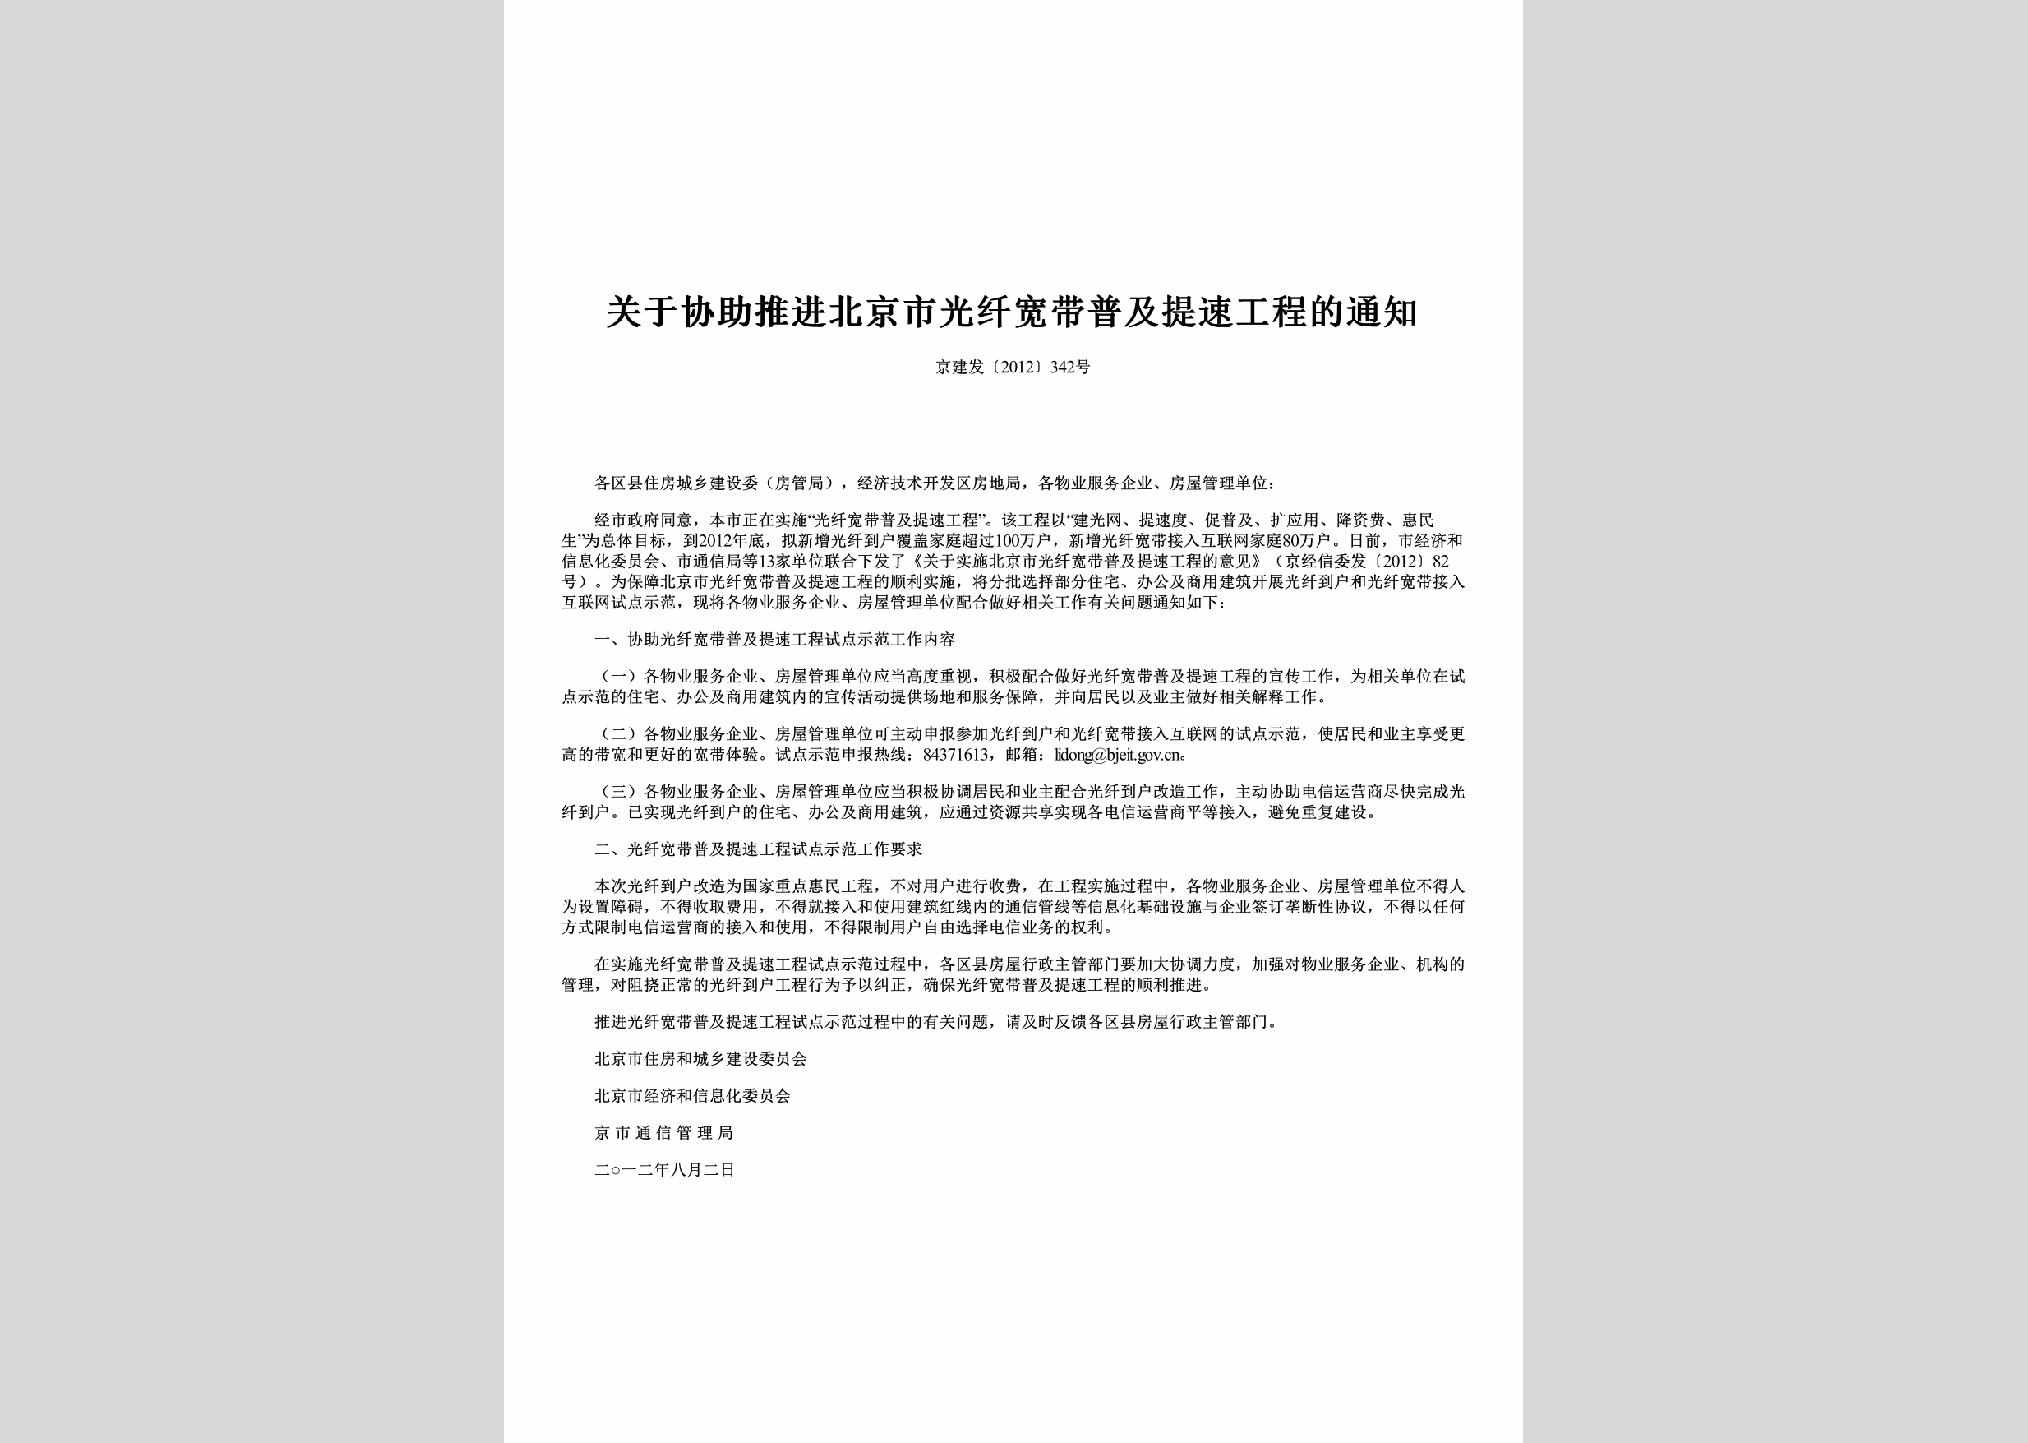 京建发[2012]342号：关于协助推进北京市光纤宽带普及提速工程的通知